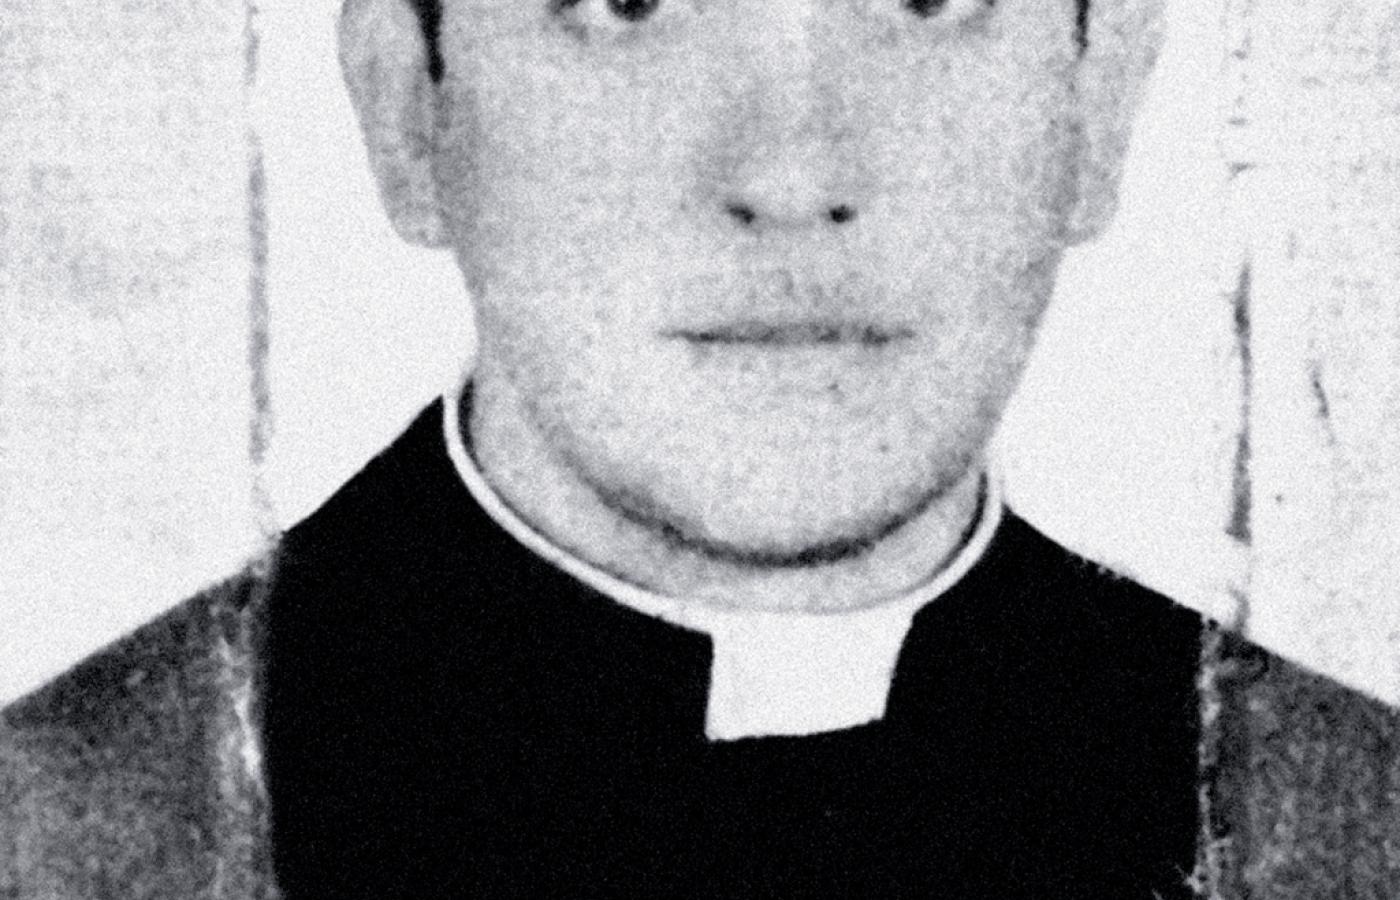 Niedatowana fotografia księdza Jorge Bergoglio pochodząca z archiwum argentyńskiego dziennika „El Clarin”.